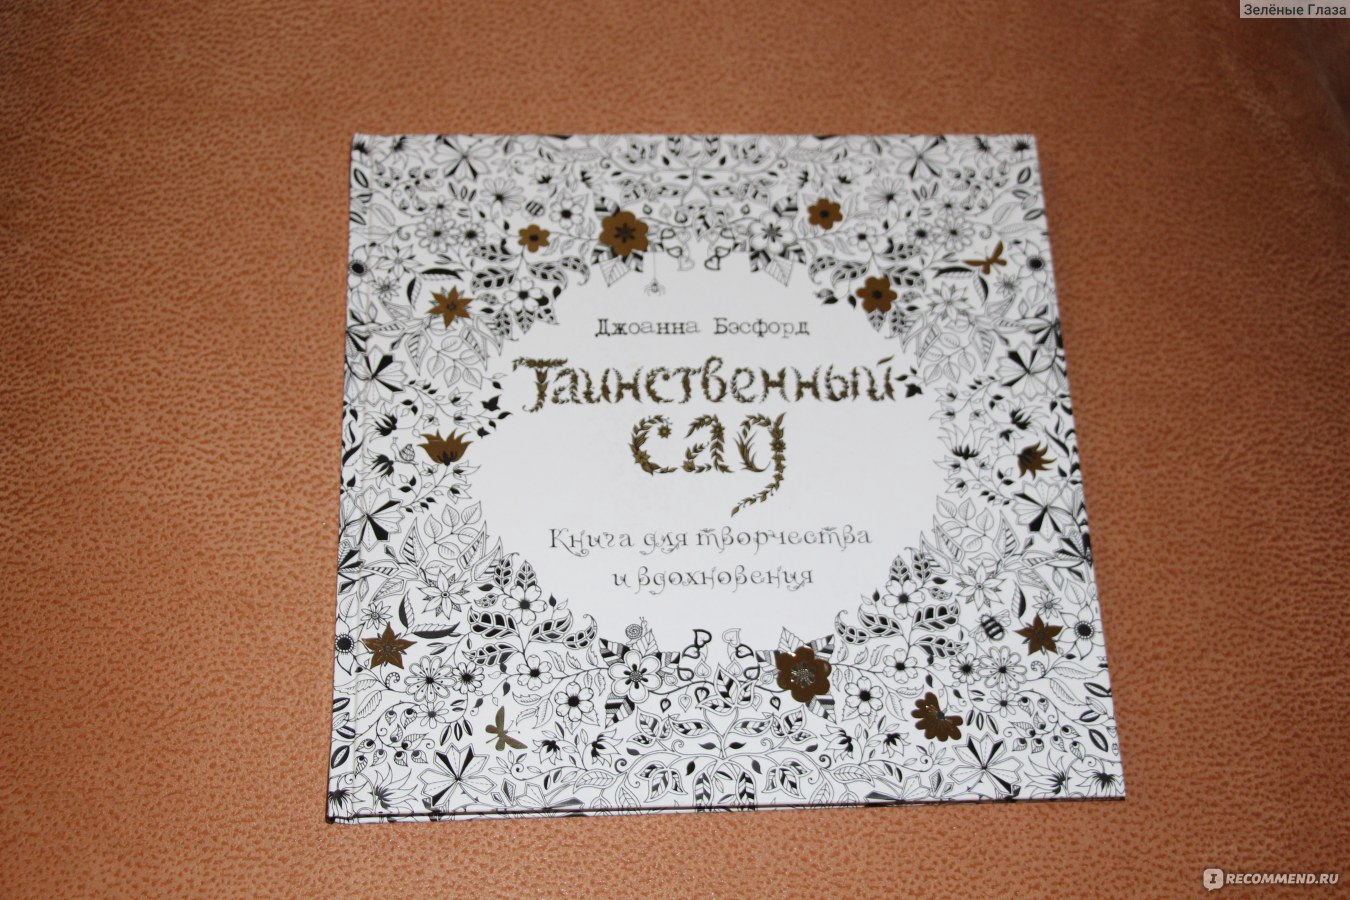 Книга раскраска «Таинственный сад», Джоанна Басфорд - купить на internat-mednogorsk.ru